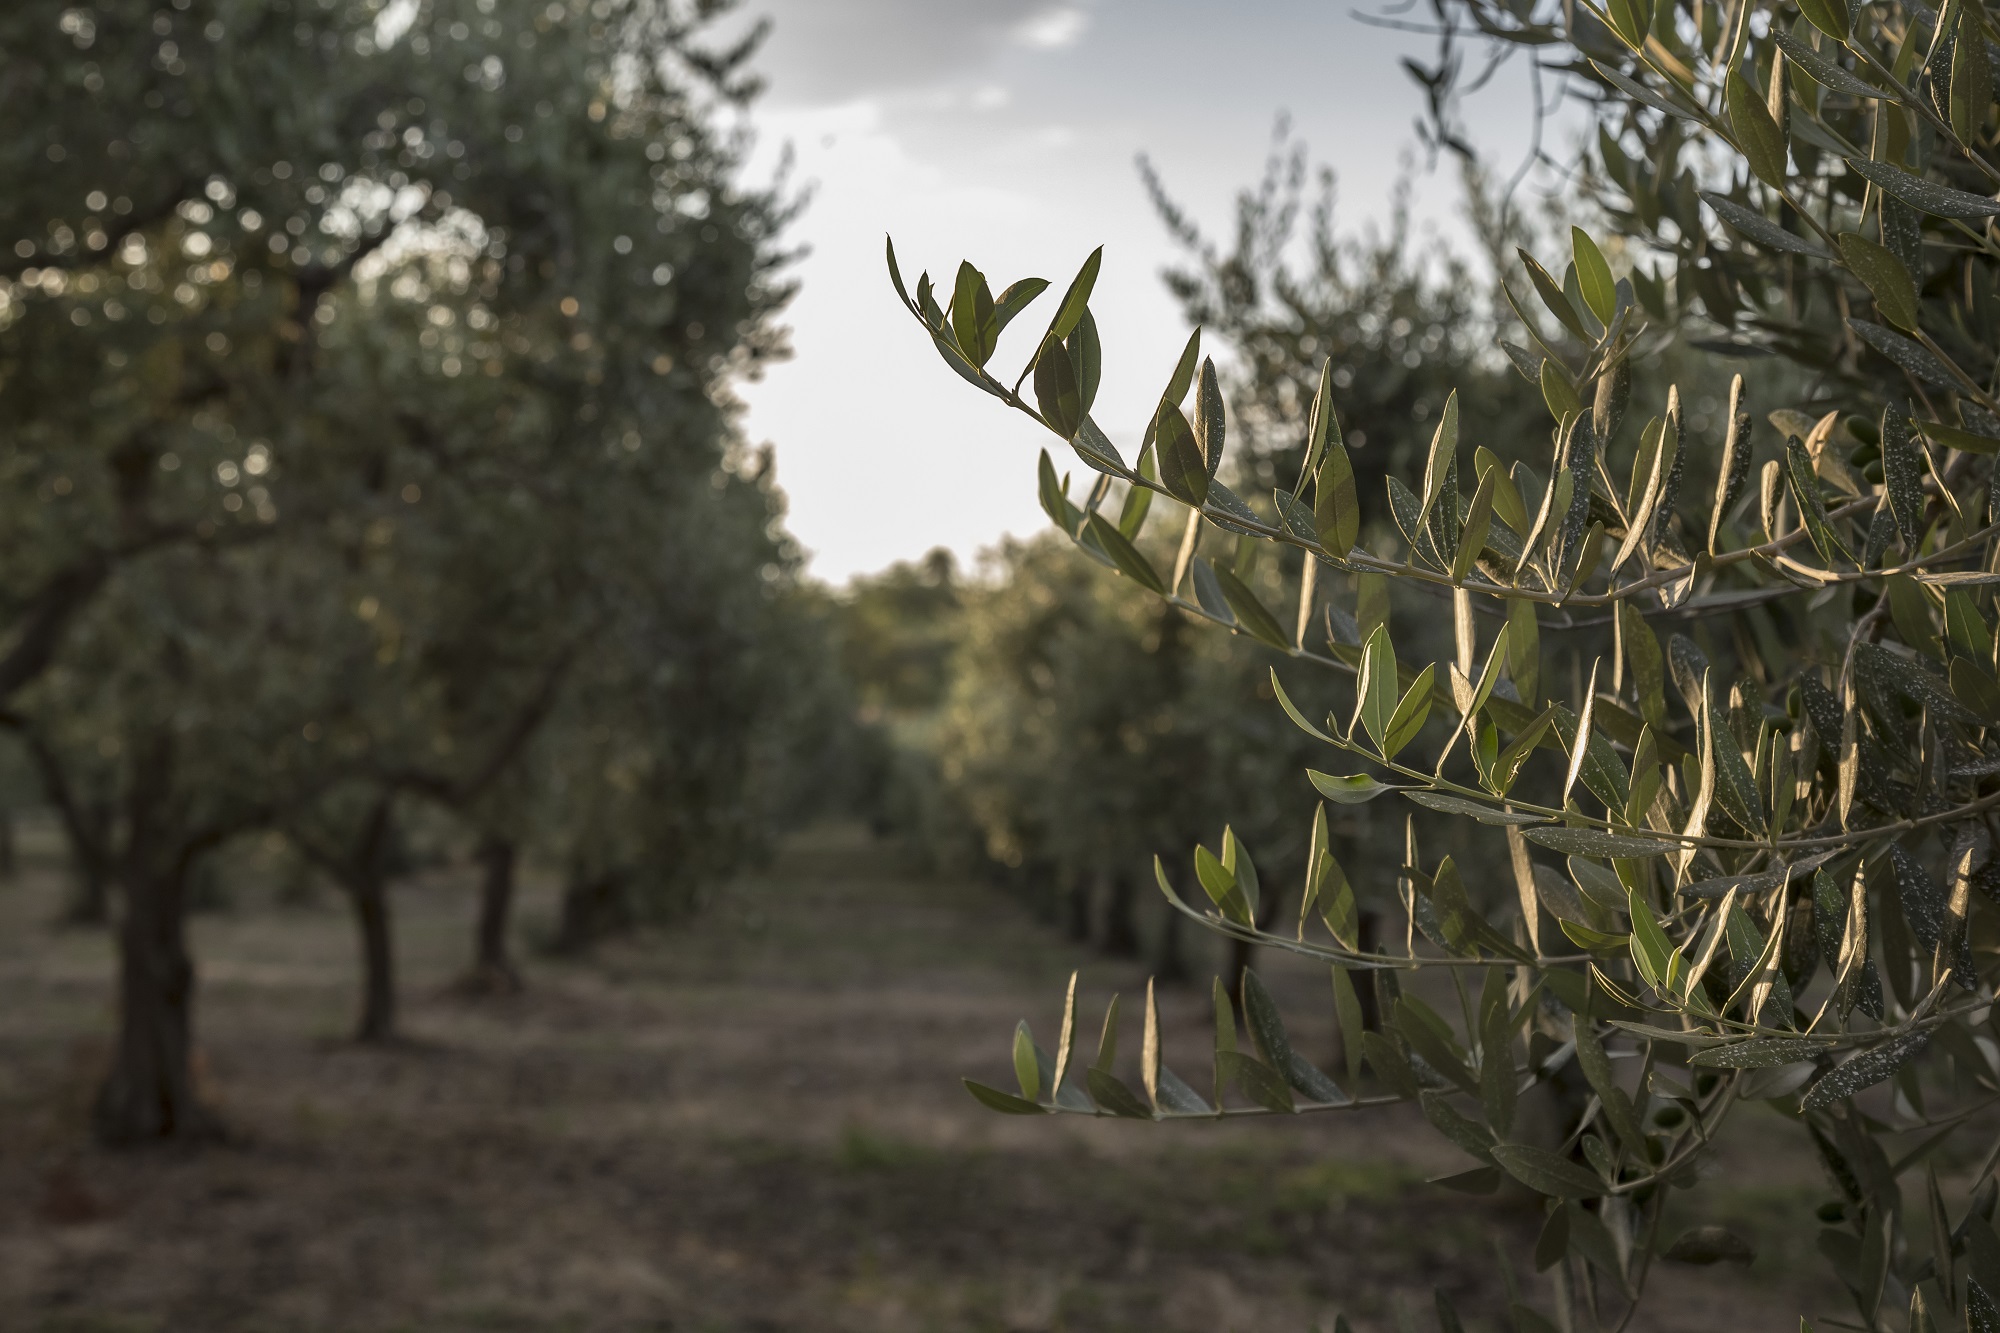 Gusta la Sicilia autentica: visita un'azienda agricola, l'uliveto e assapora un pranzo tipico locale